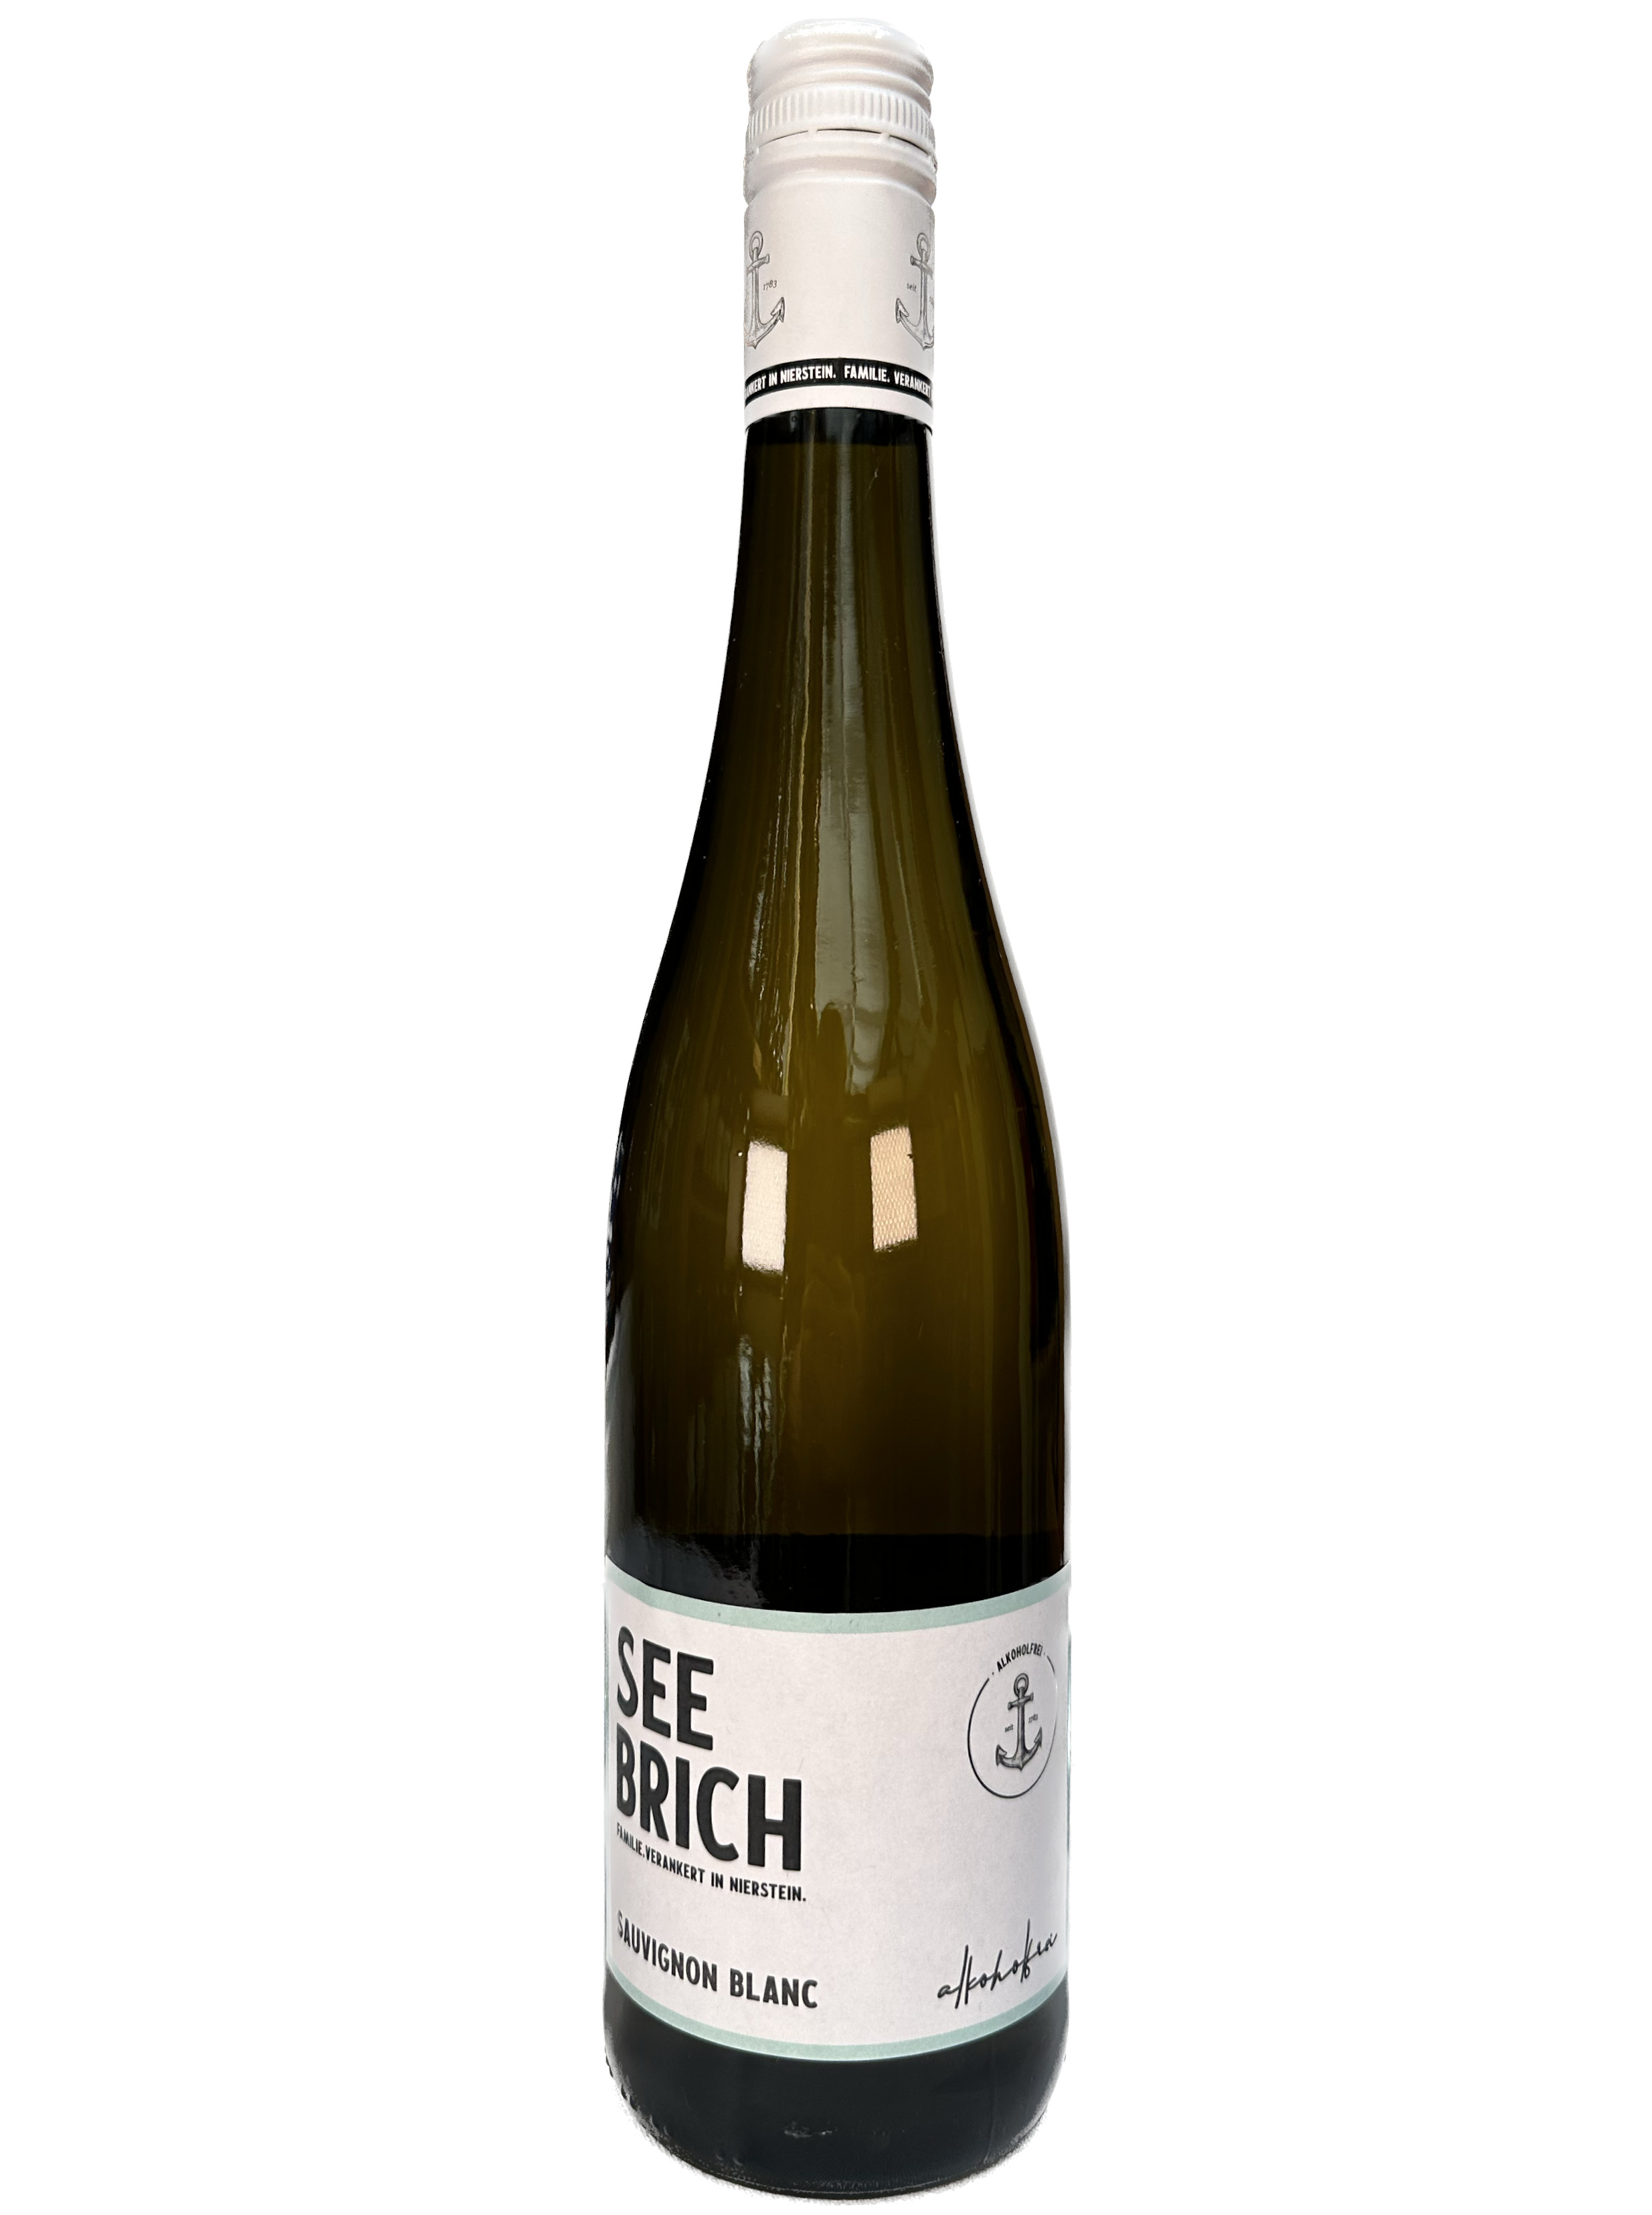 alkoholfrei - Blanc Sauvignon Seebrich Online Weinhandel